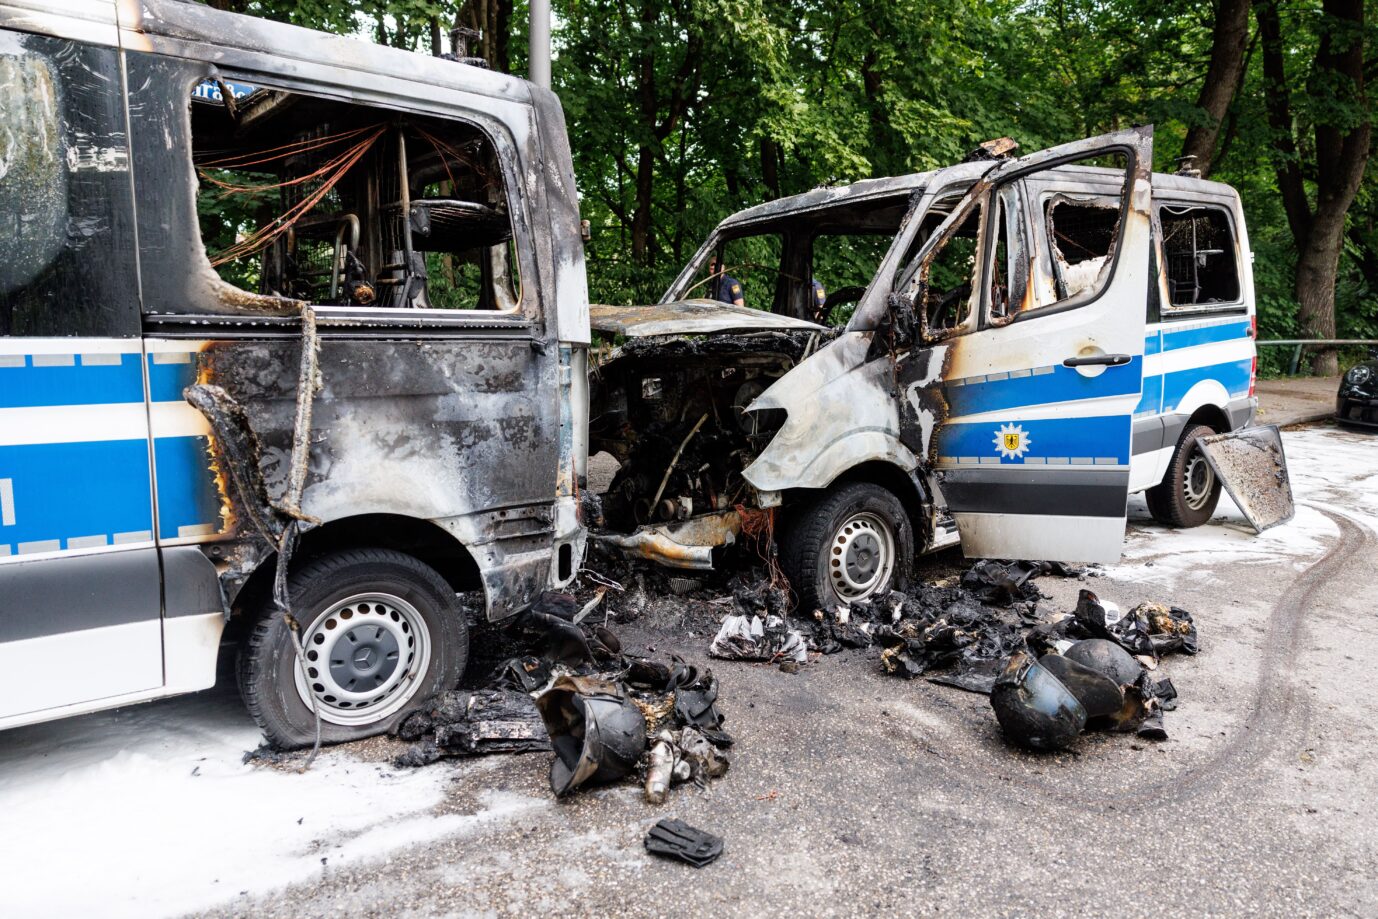 Linke Gewalt. Ein Bild der Verwüstung: Polizeiautos nach dem Brandanschlag in München vor dem G7-Gipfel.